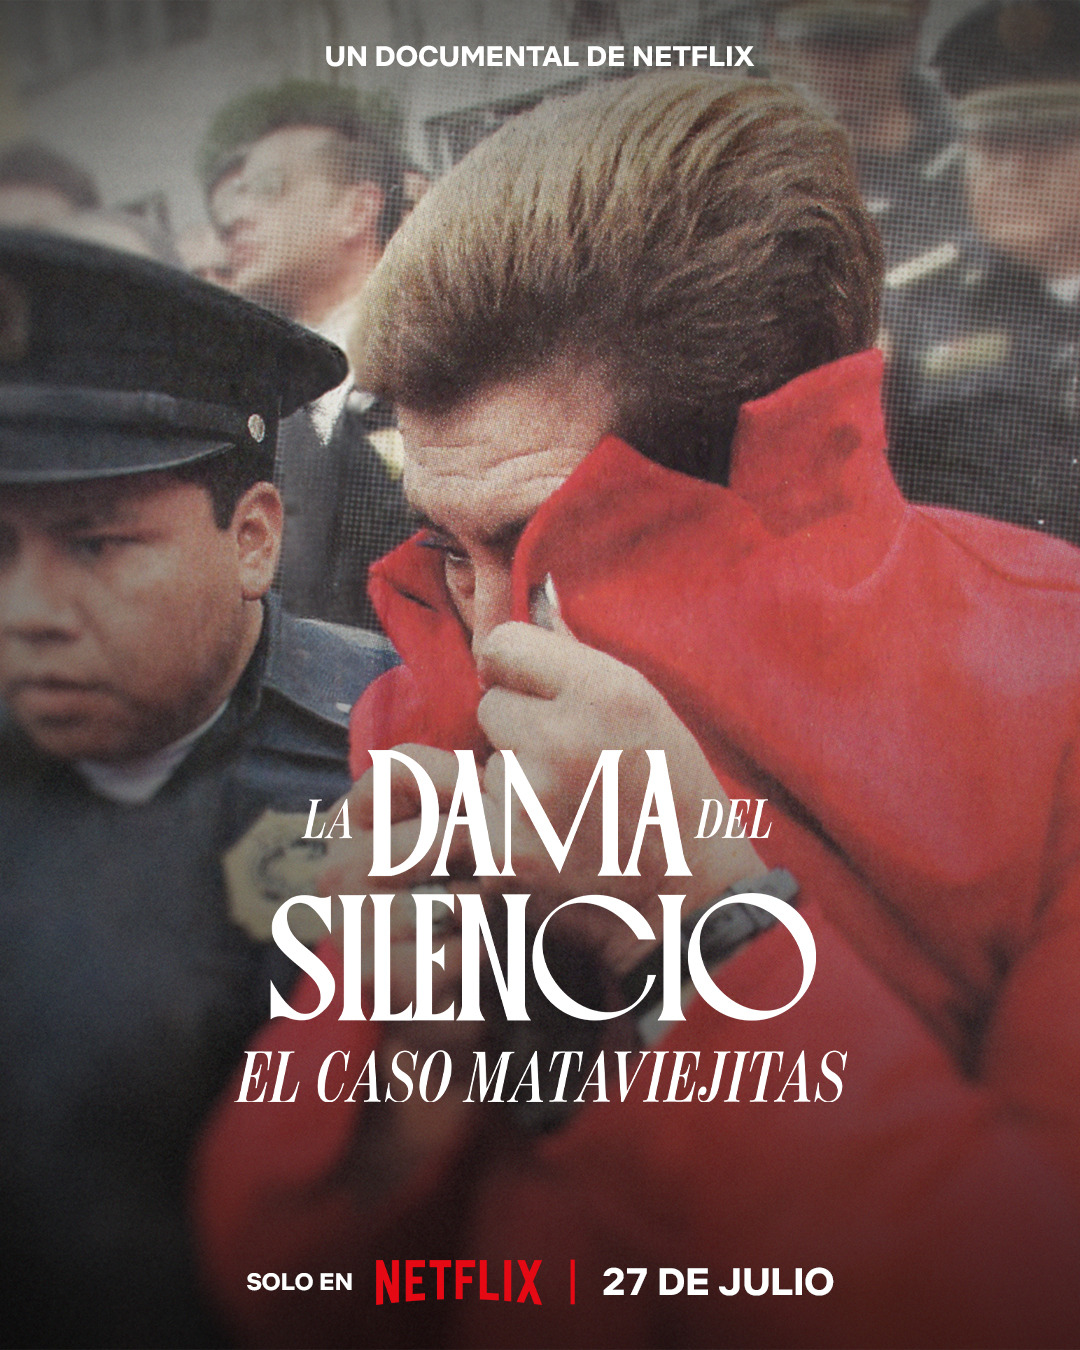 Extra Large Movie Poster Image for La dama del silencio: El caso de la Mataviejitas 